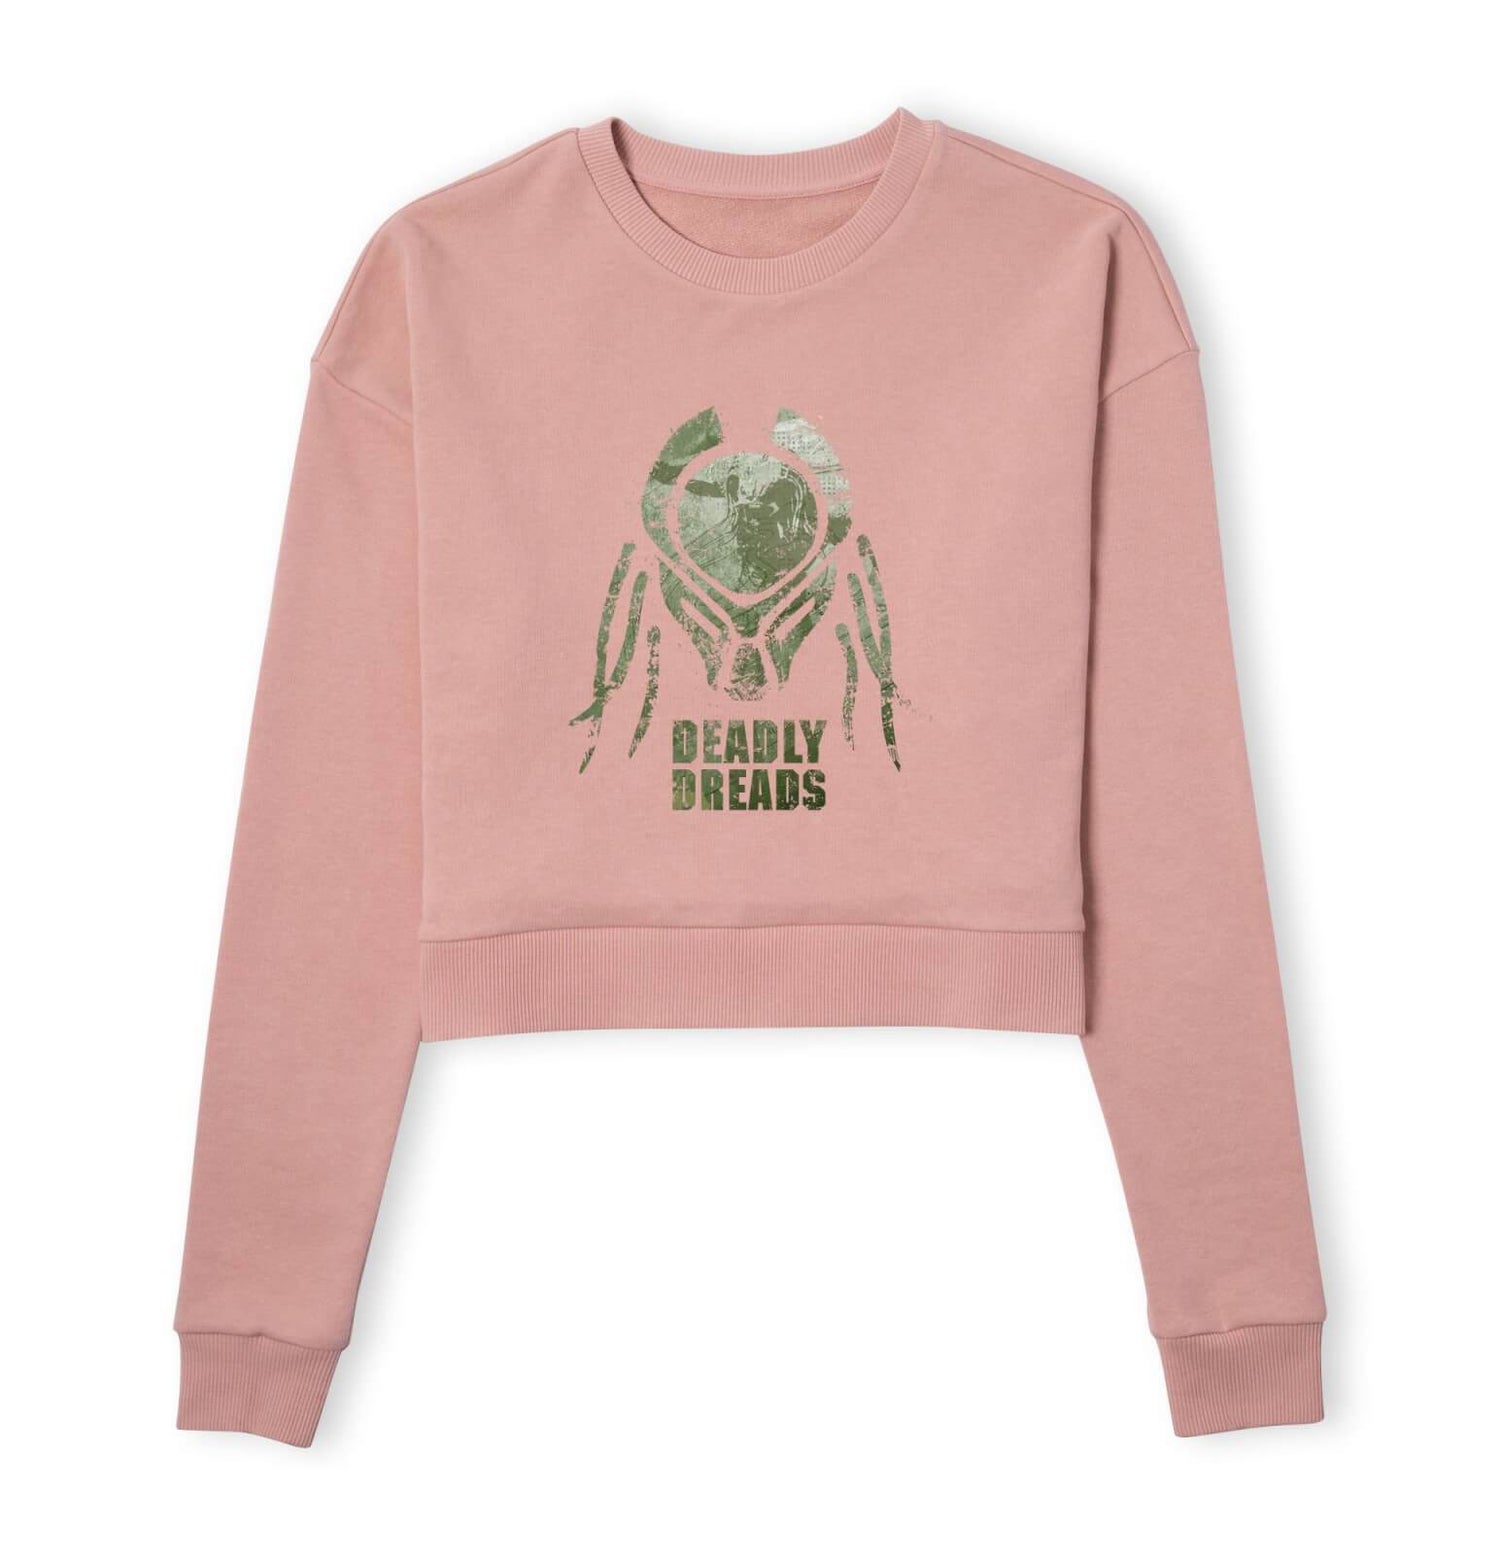 Predator Deadly Dreads Women's Cropped Sweatshirt - Dusty Pink